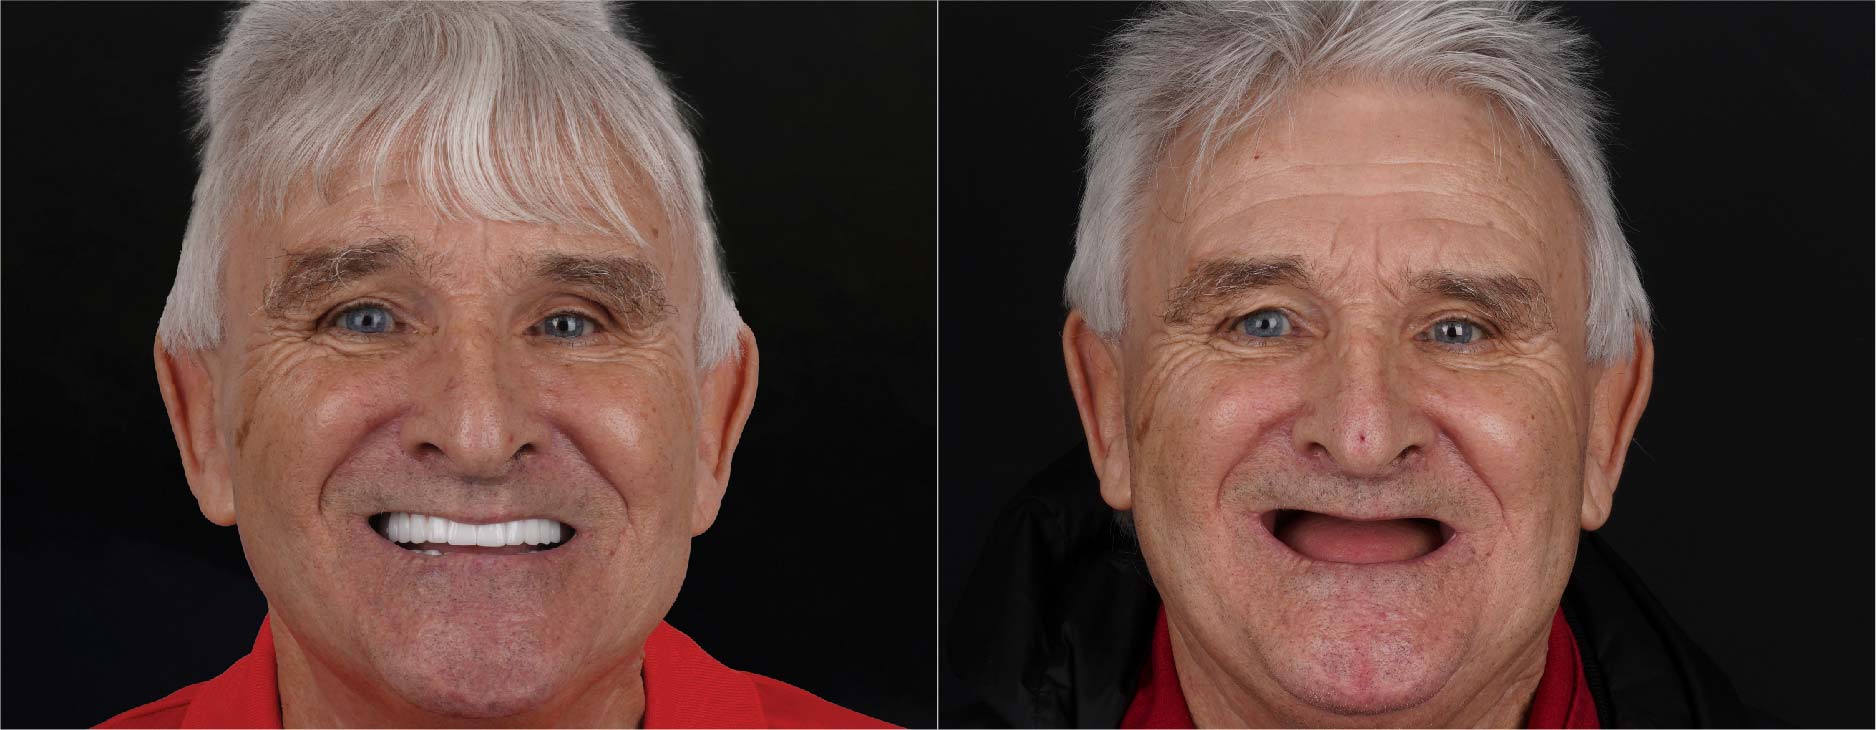 Prothèses dentaires fixes sur implants avant et après - Dentakay